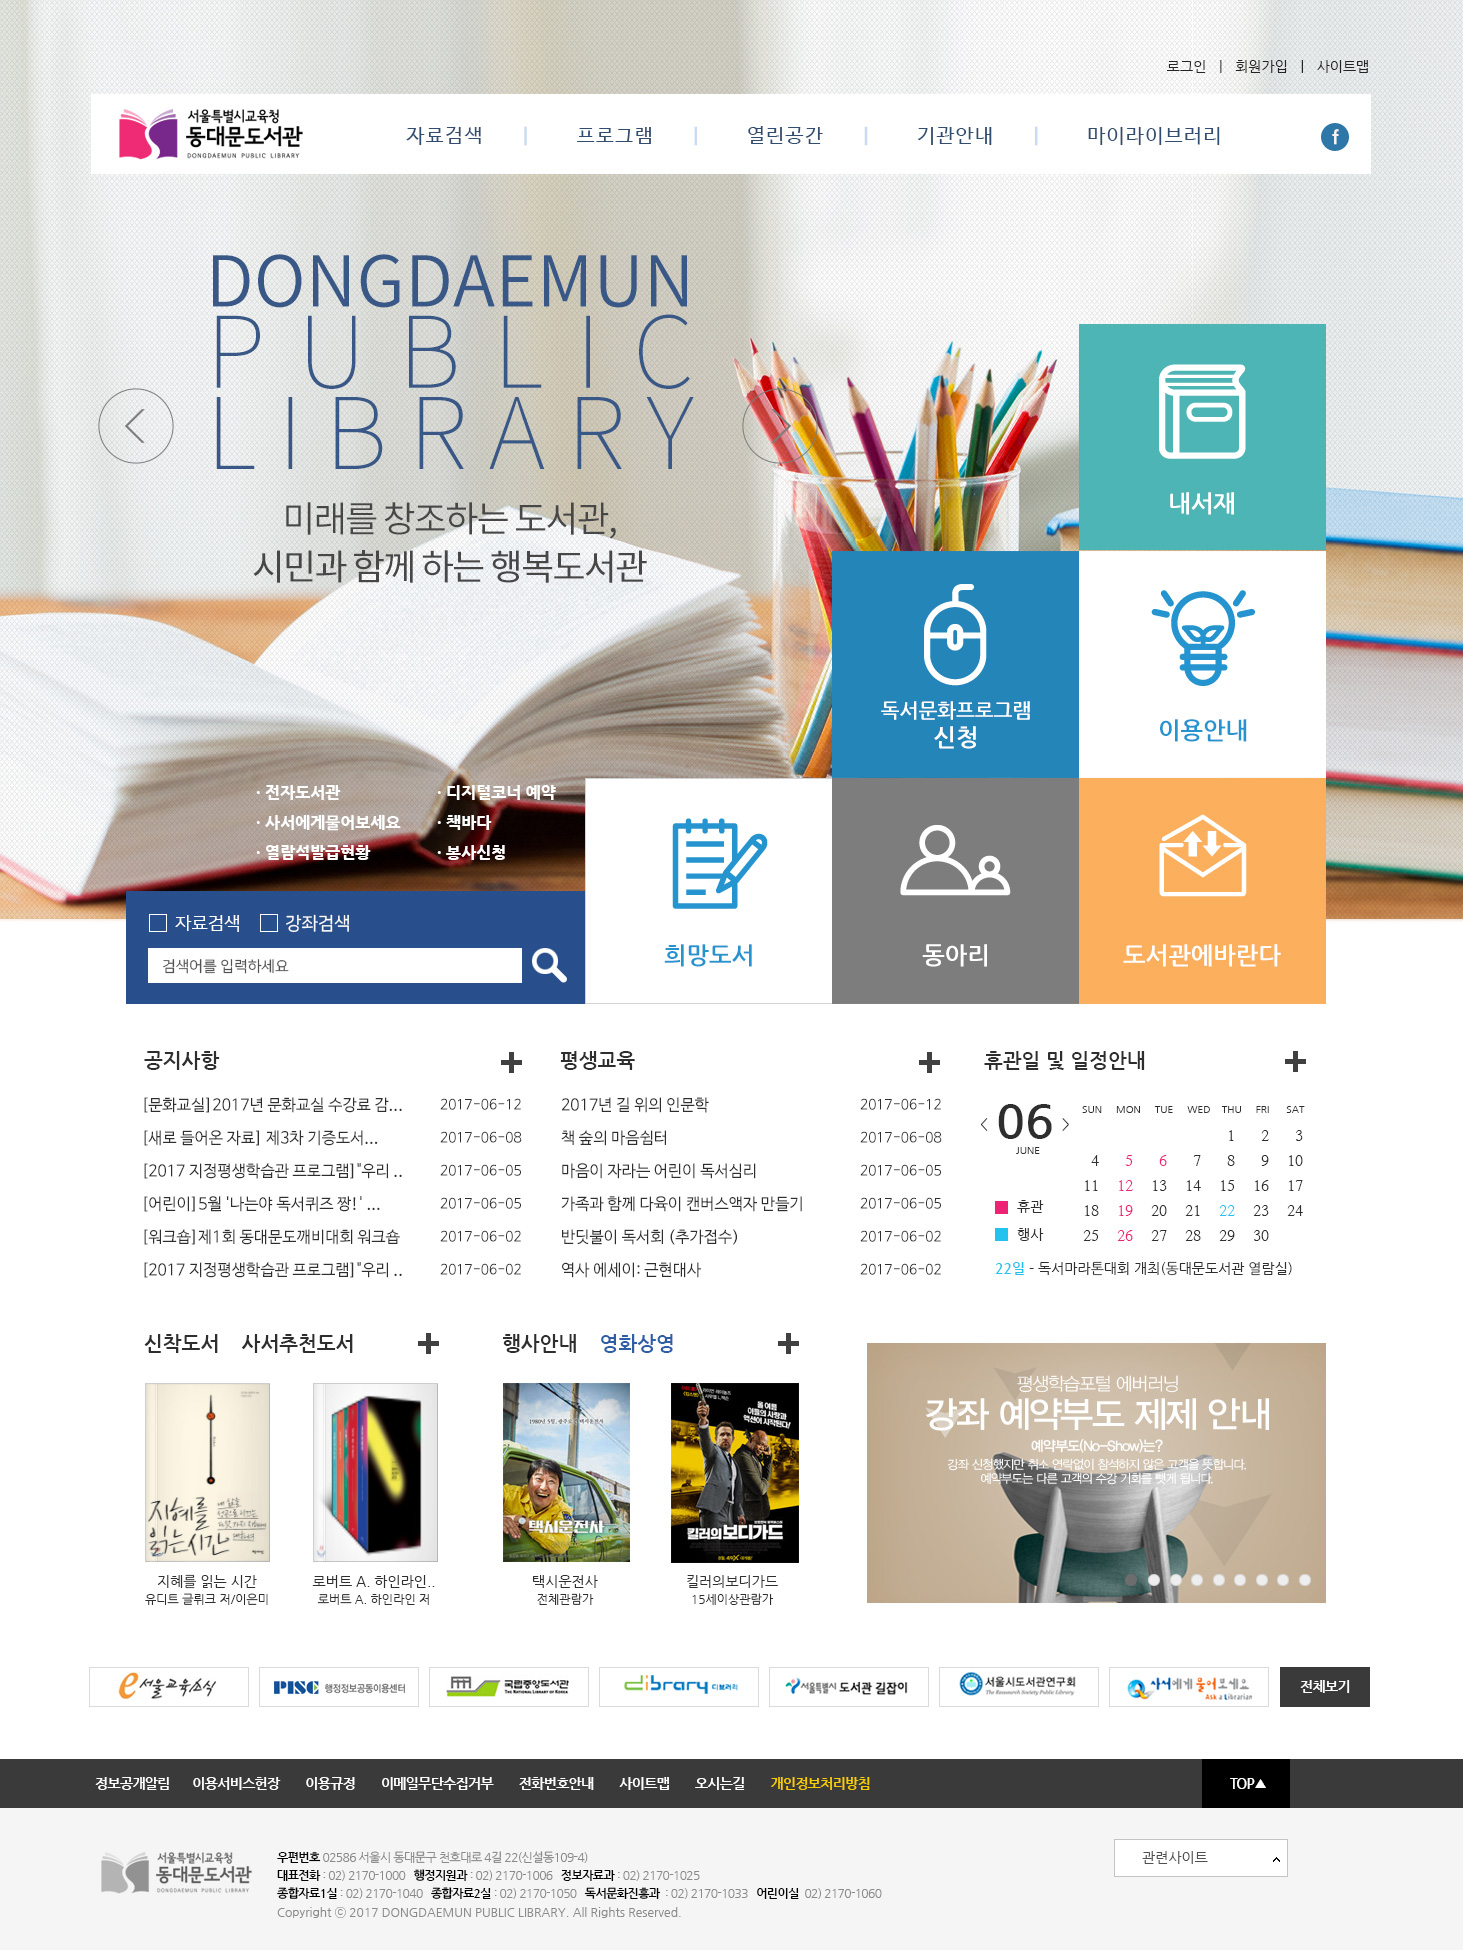 서울시교육청은 10일부터 고척도서관, 도봉도서관, 동대문도서관을 시작으로, 22개 도서관·평생학습관 홈페이지가 전면 개편된다. ⓒ서울시교육청